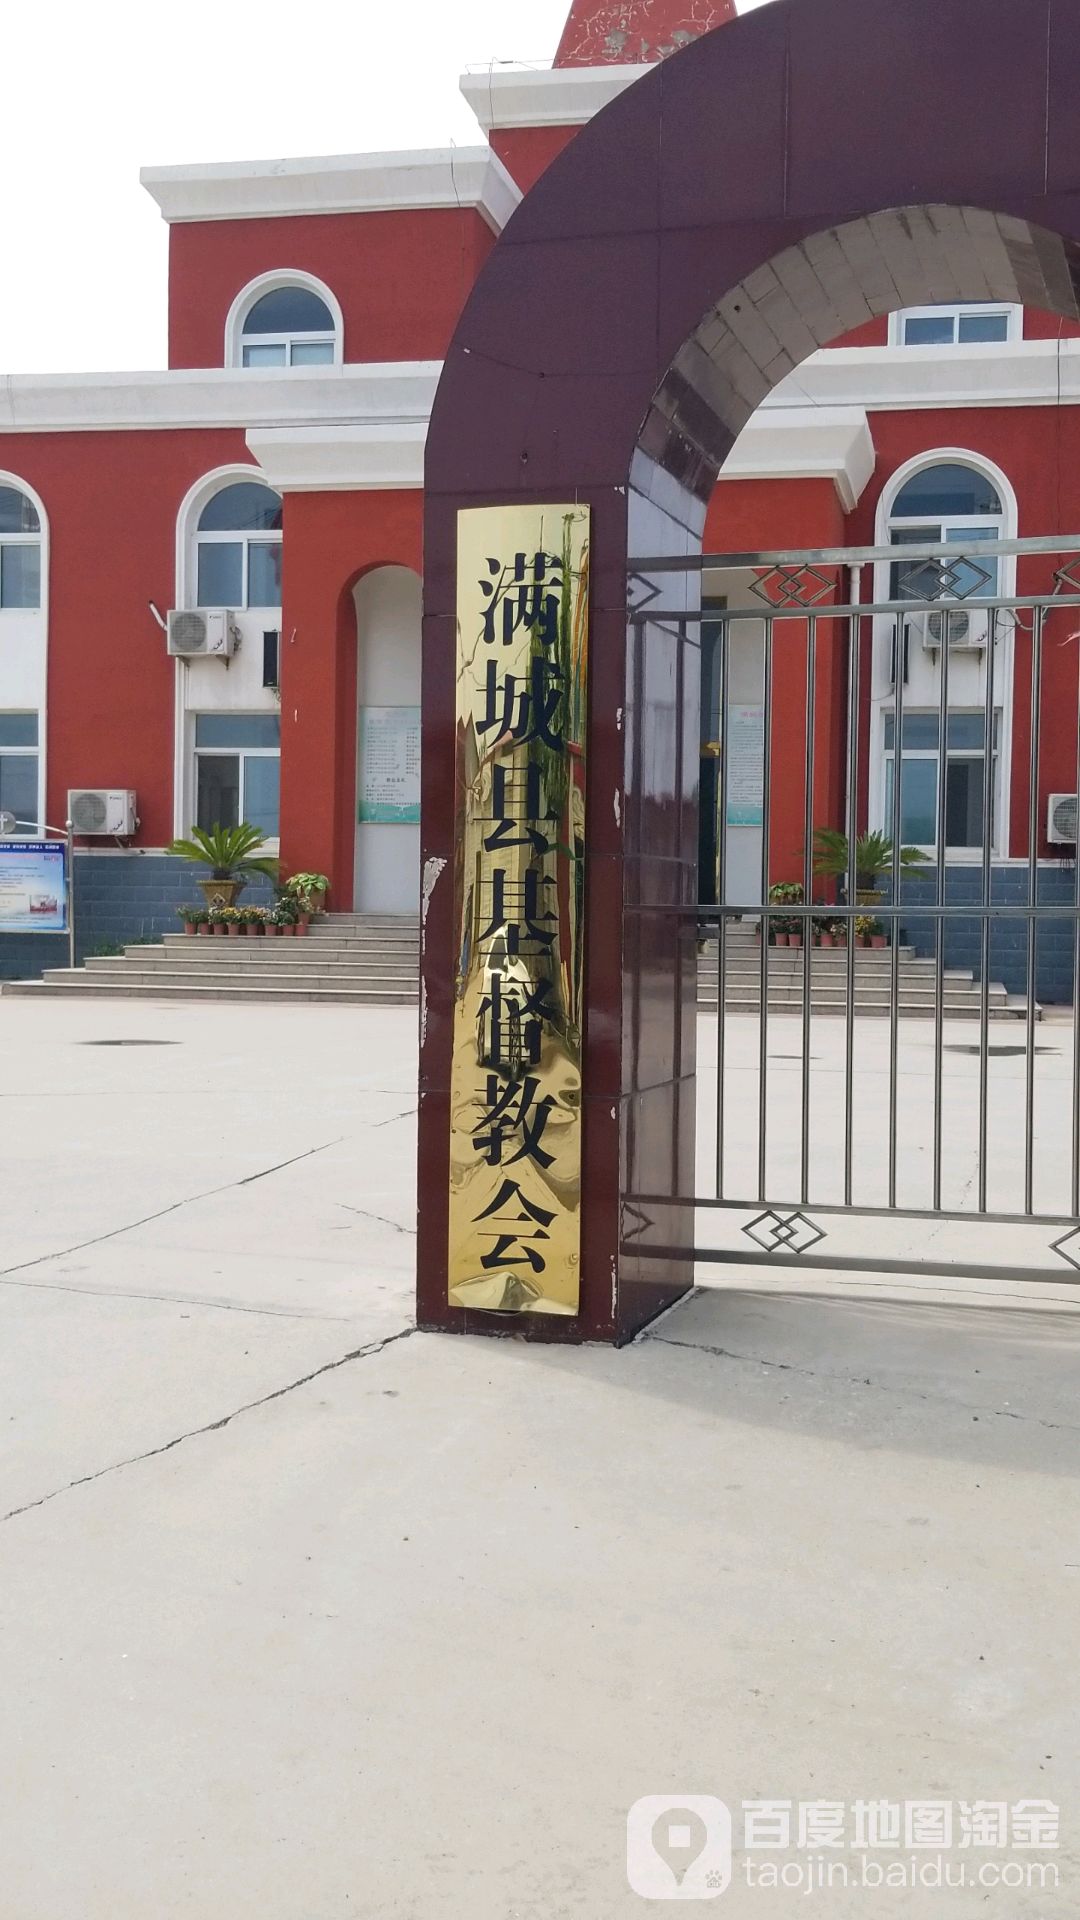 滿城區基督教會